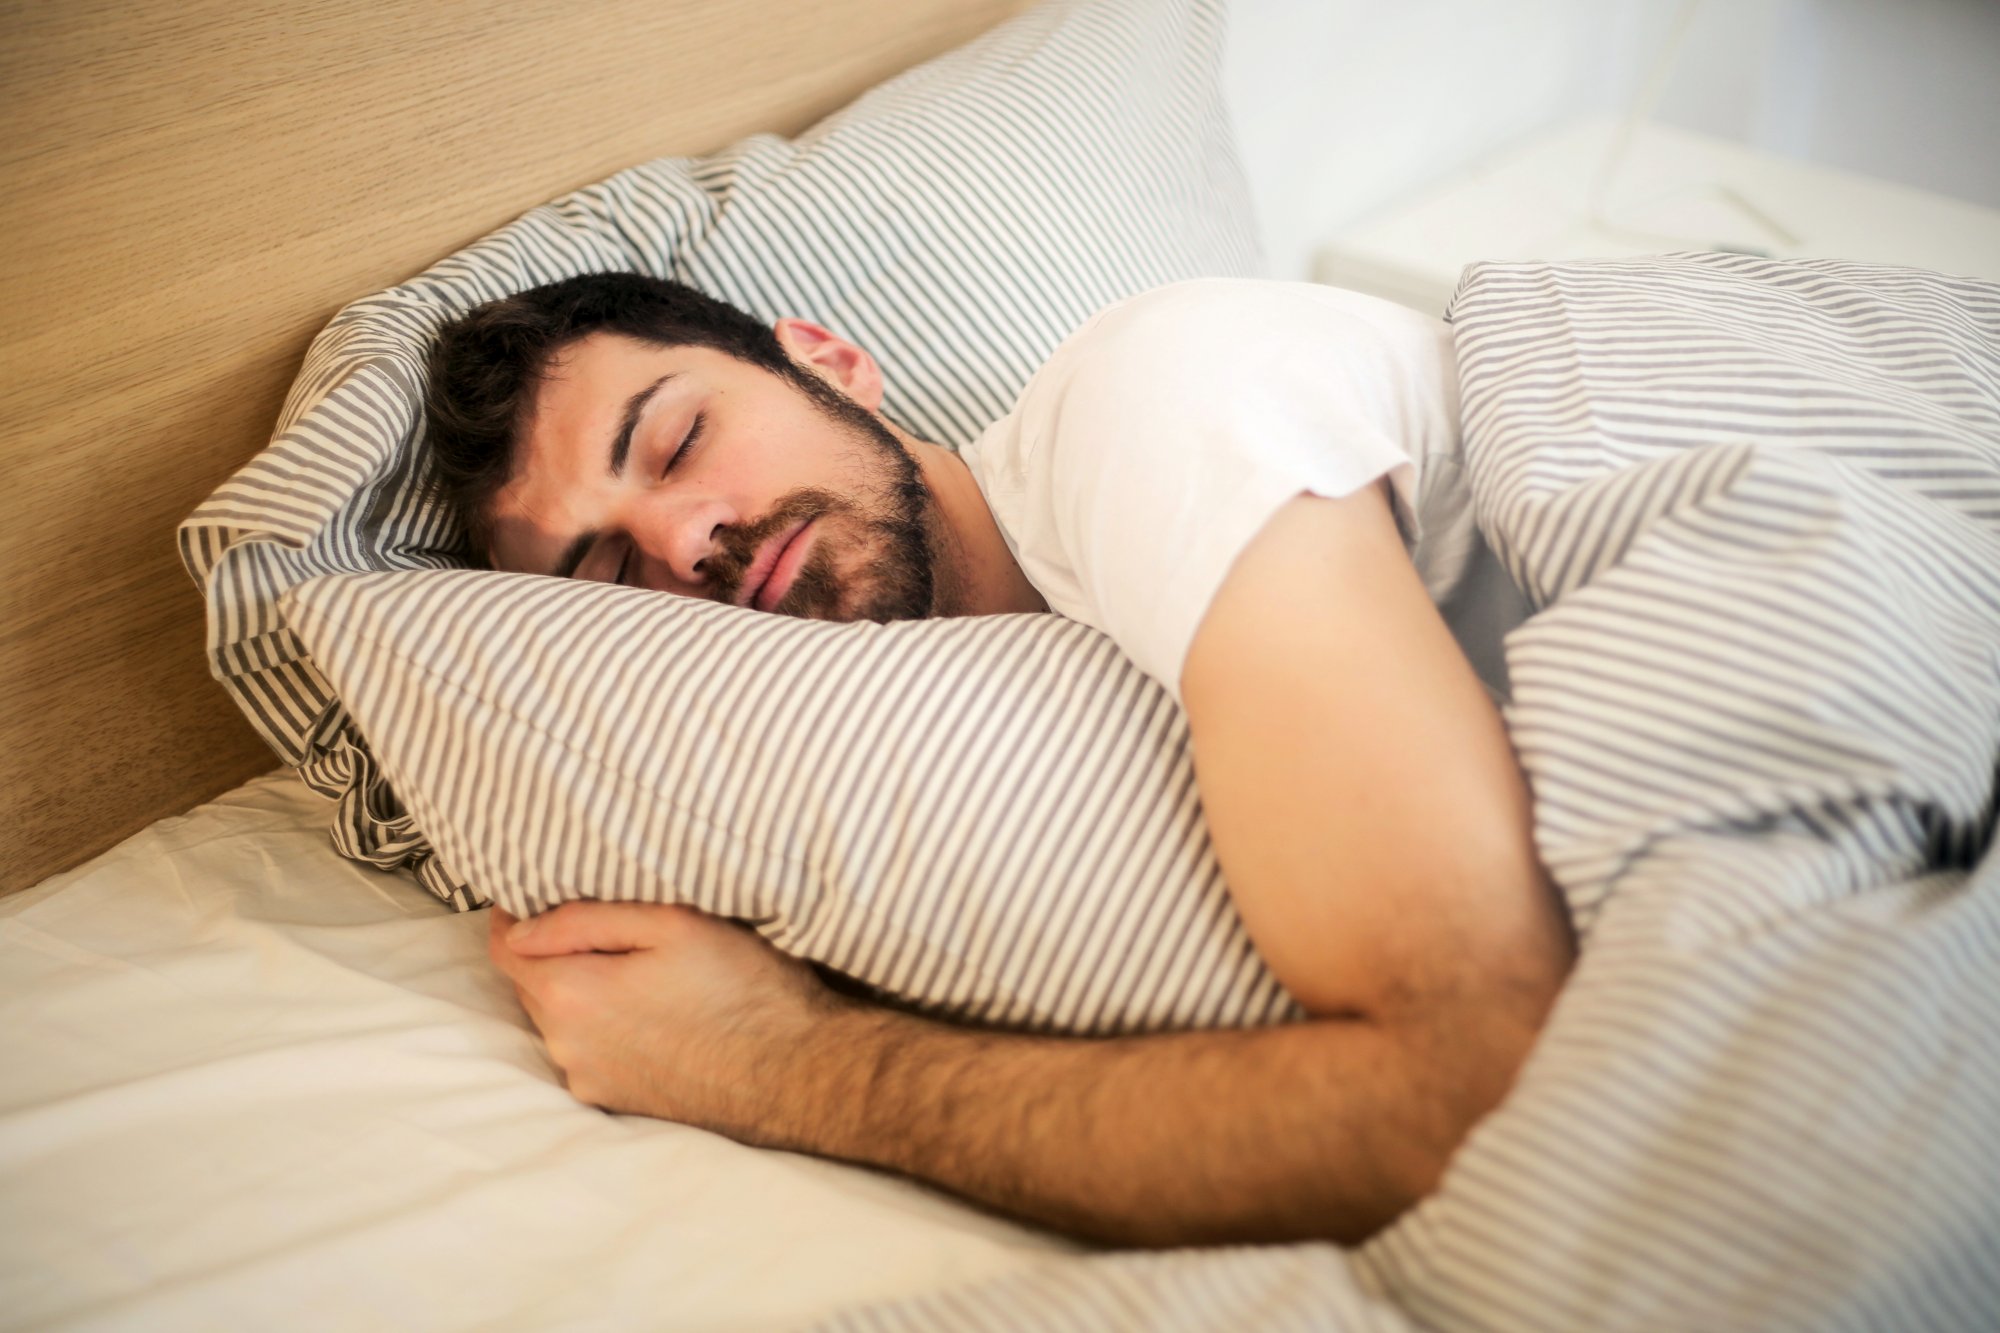 Ύπνος: To πείραμα που αποδεικνύει ότι κοιμόμαστε με το ένα αφτί ανοιχτό